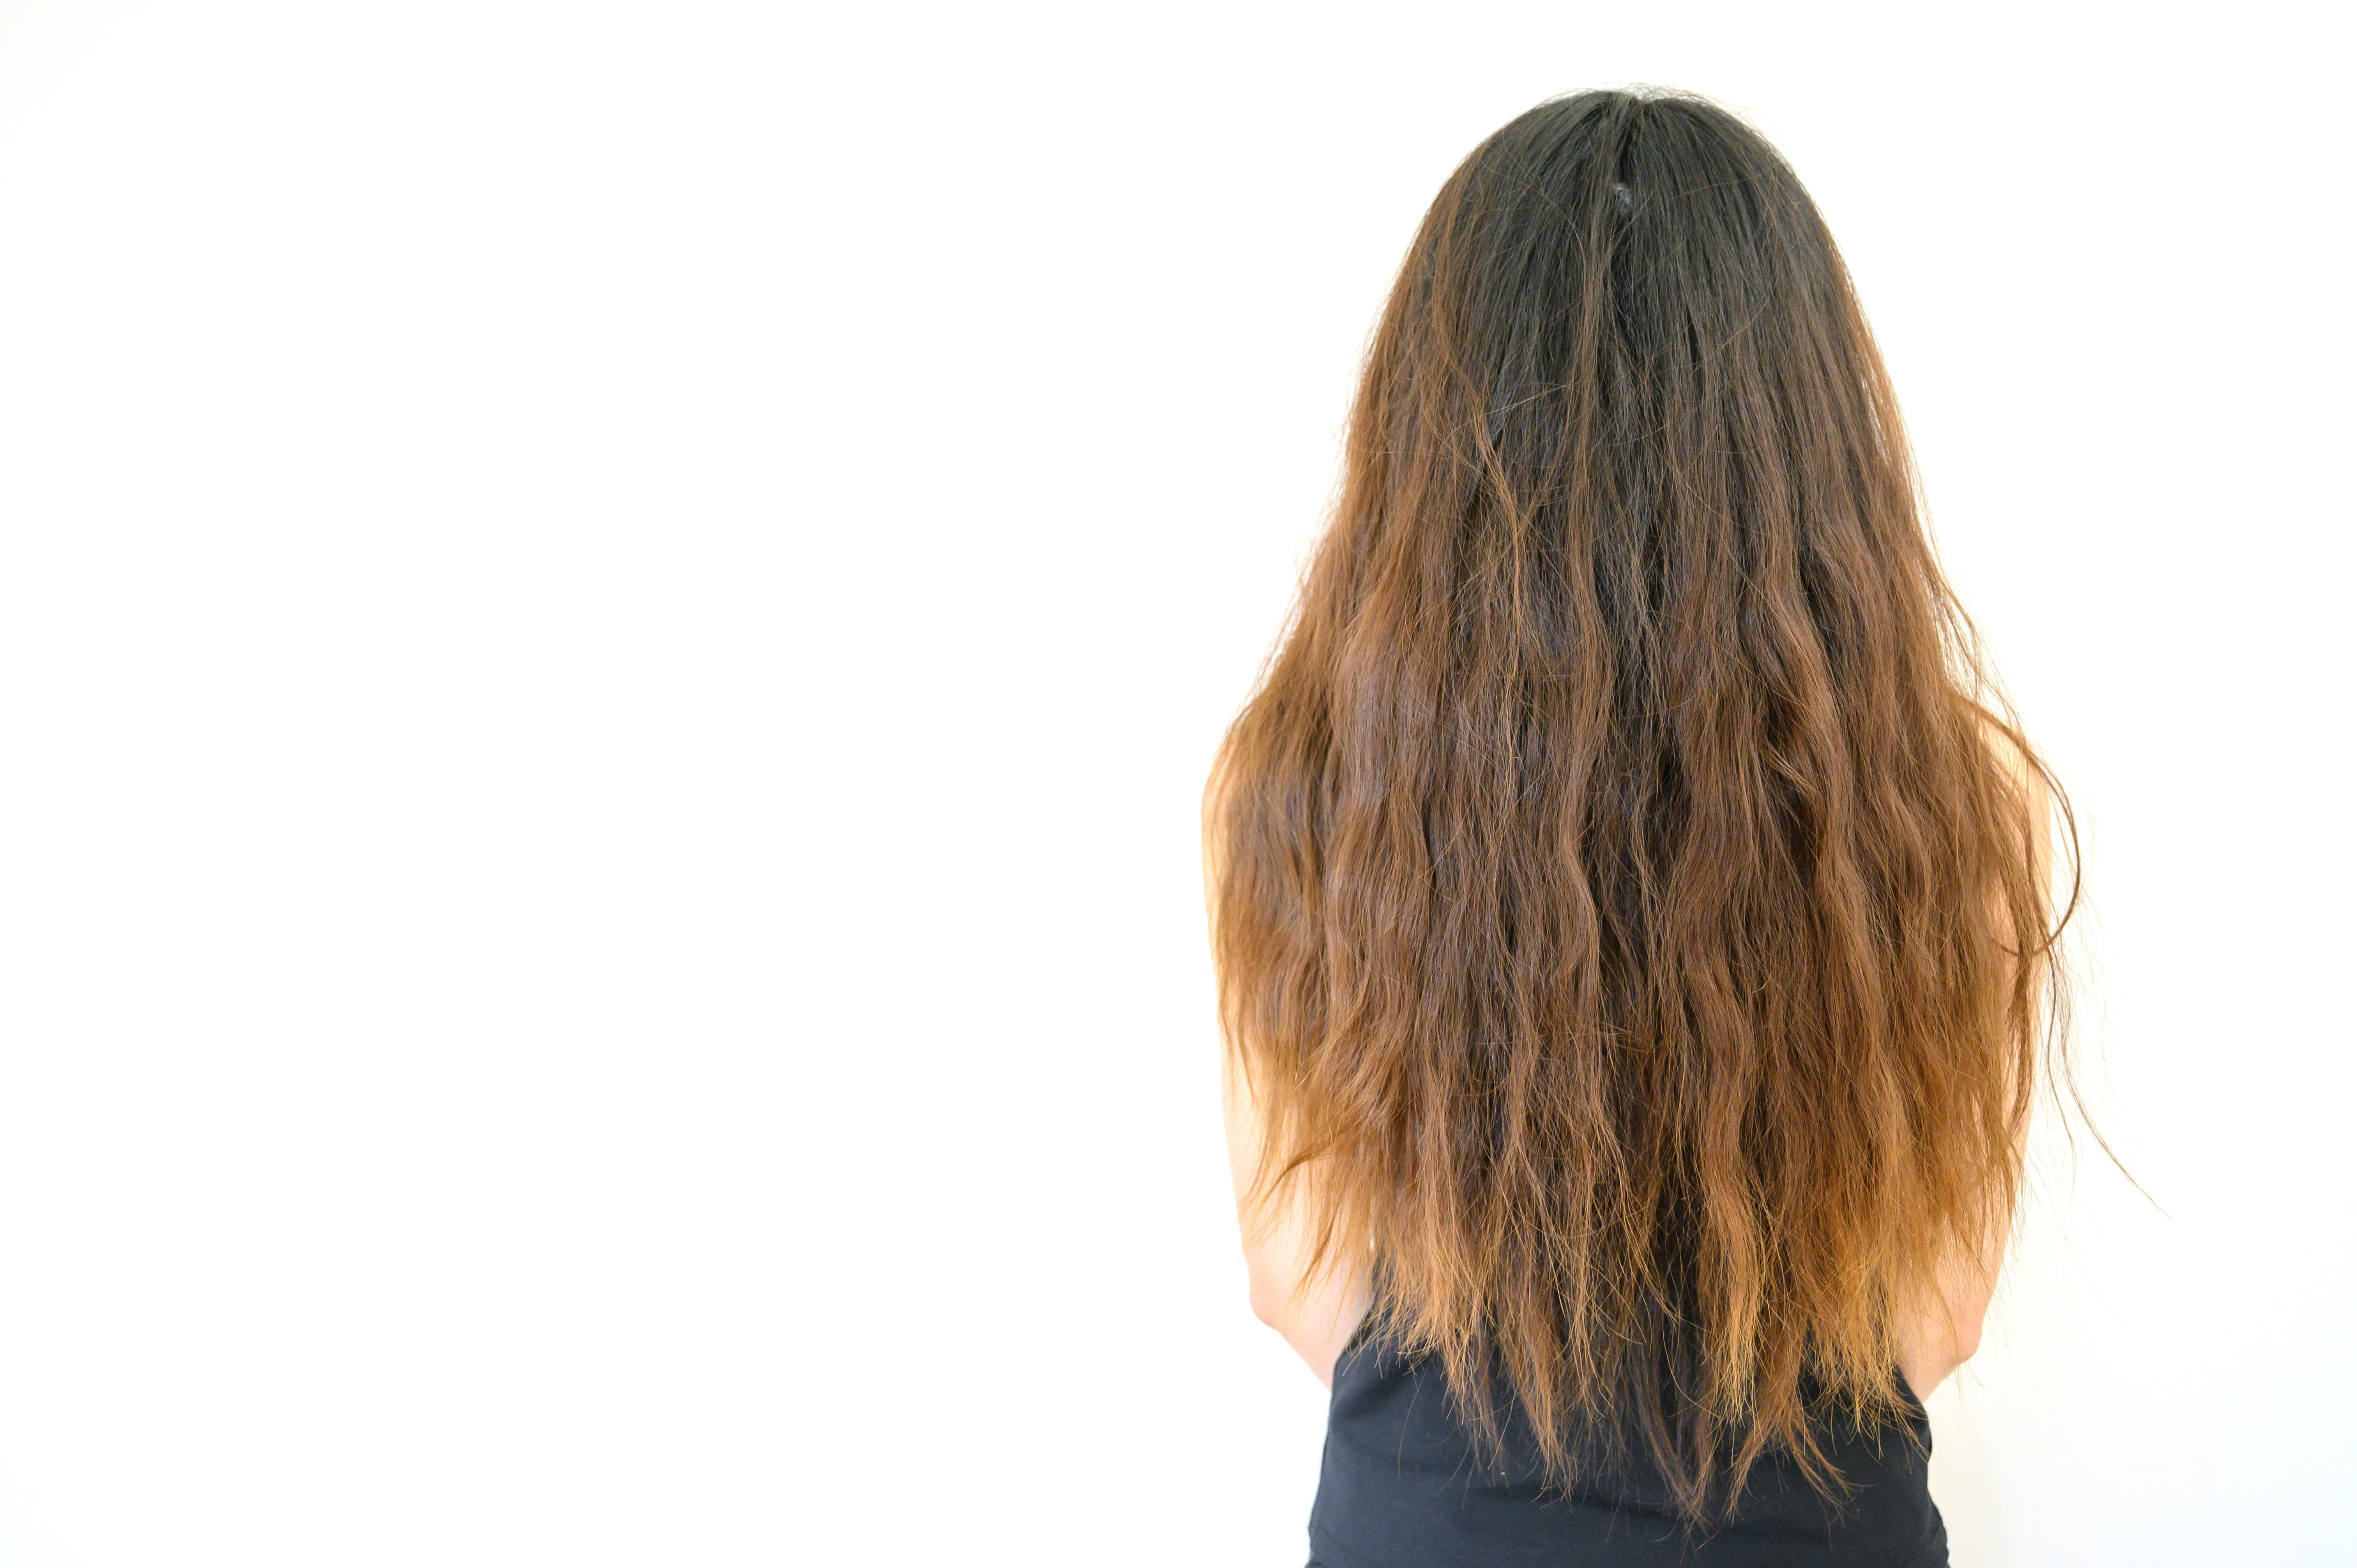 Vue arrière d'une jeune femme aux cheveux crépus | Source : Shutterstock